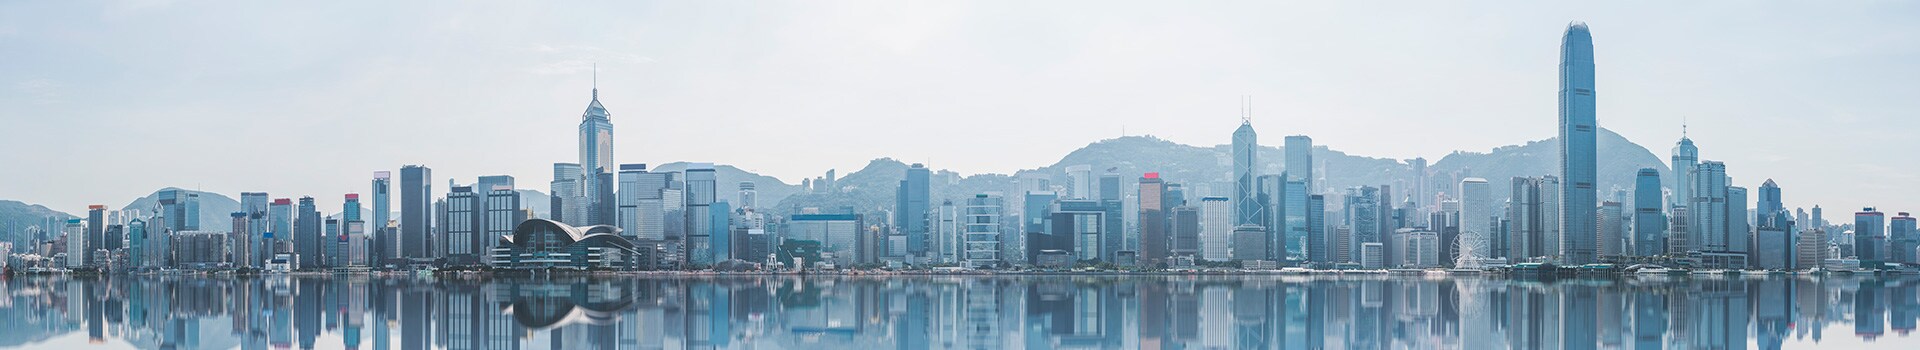 Francoforte - Hong kong